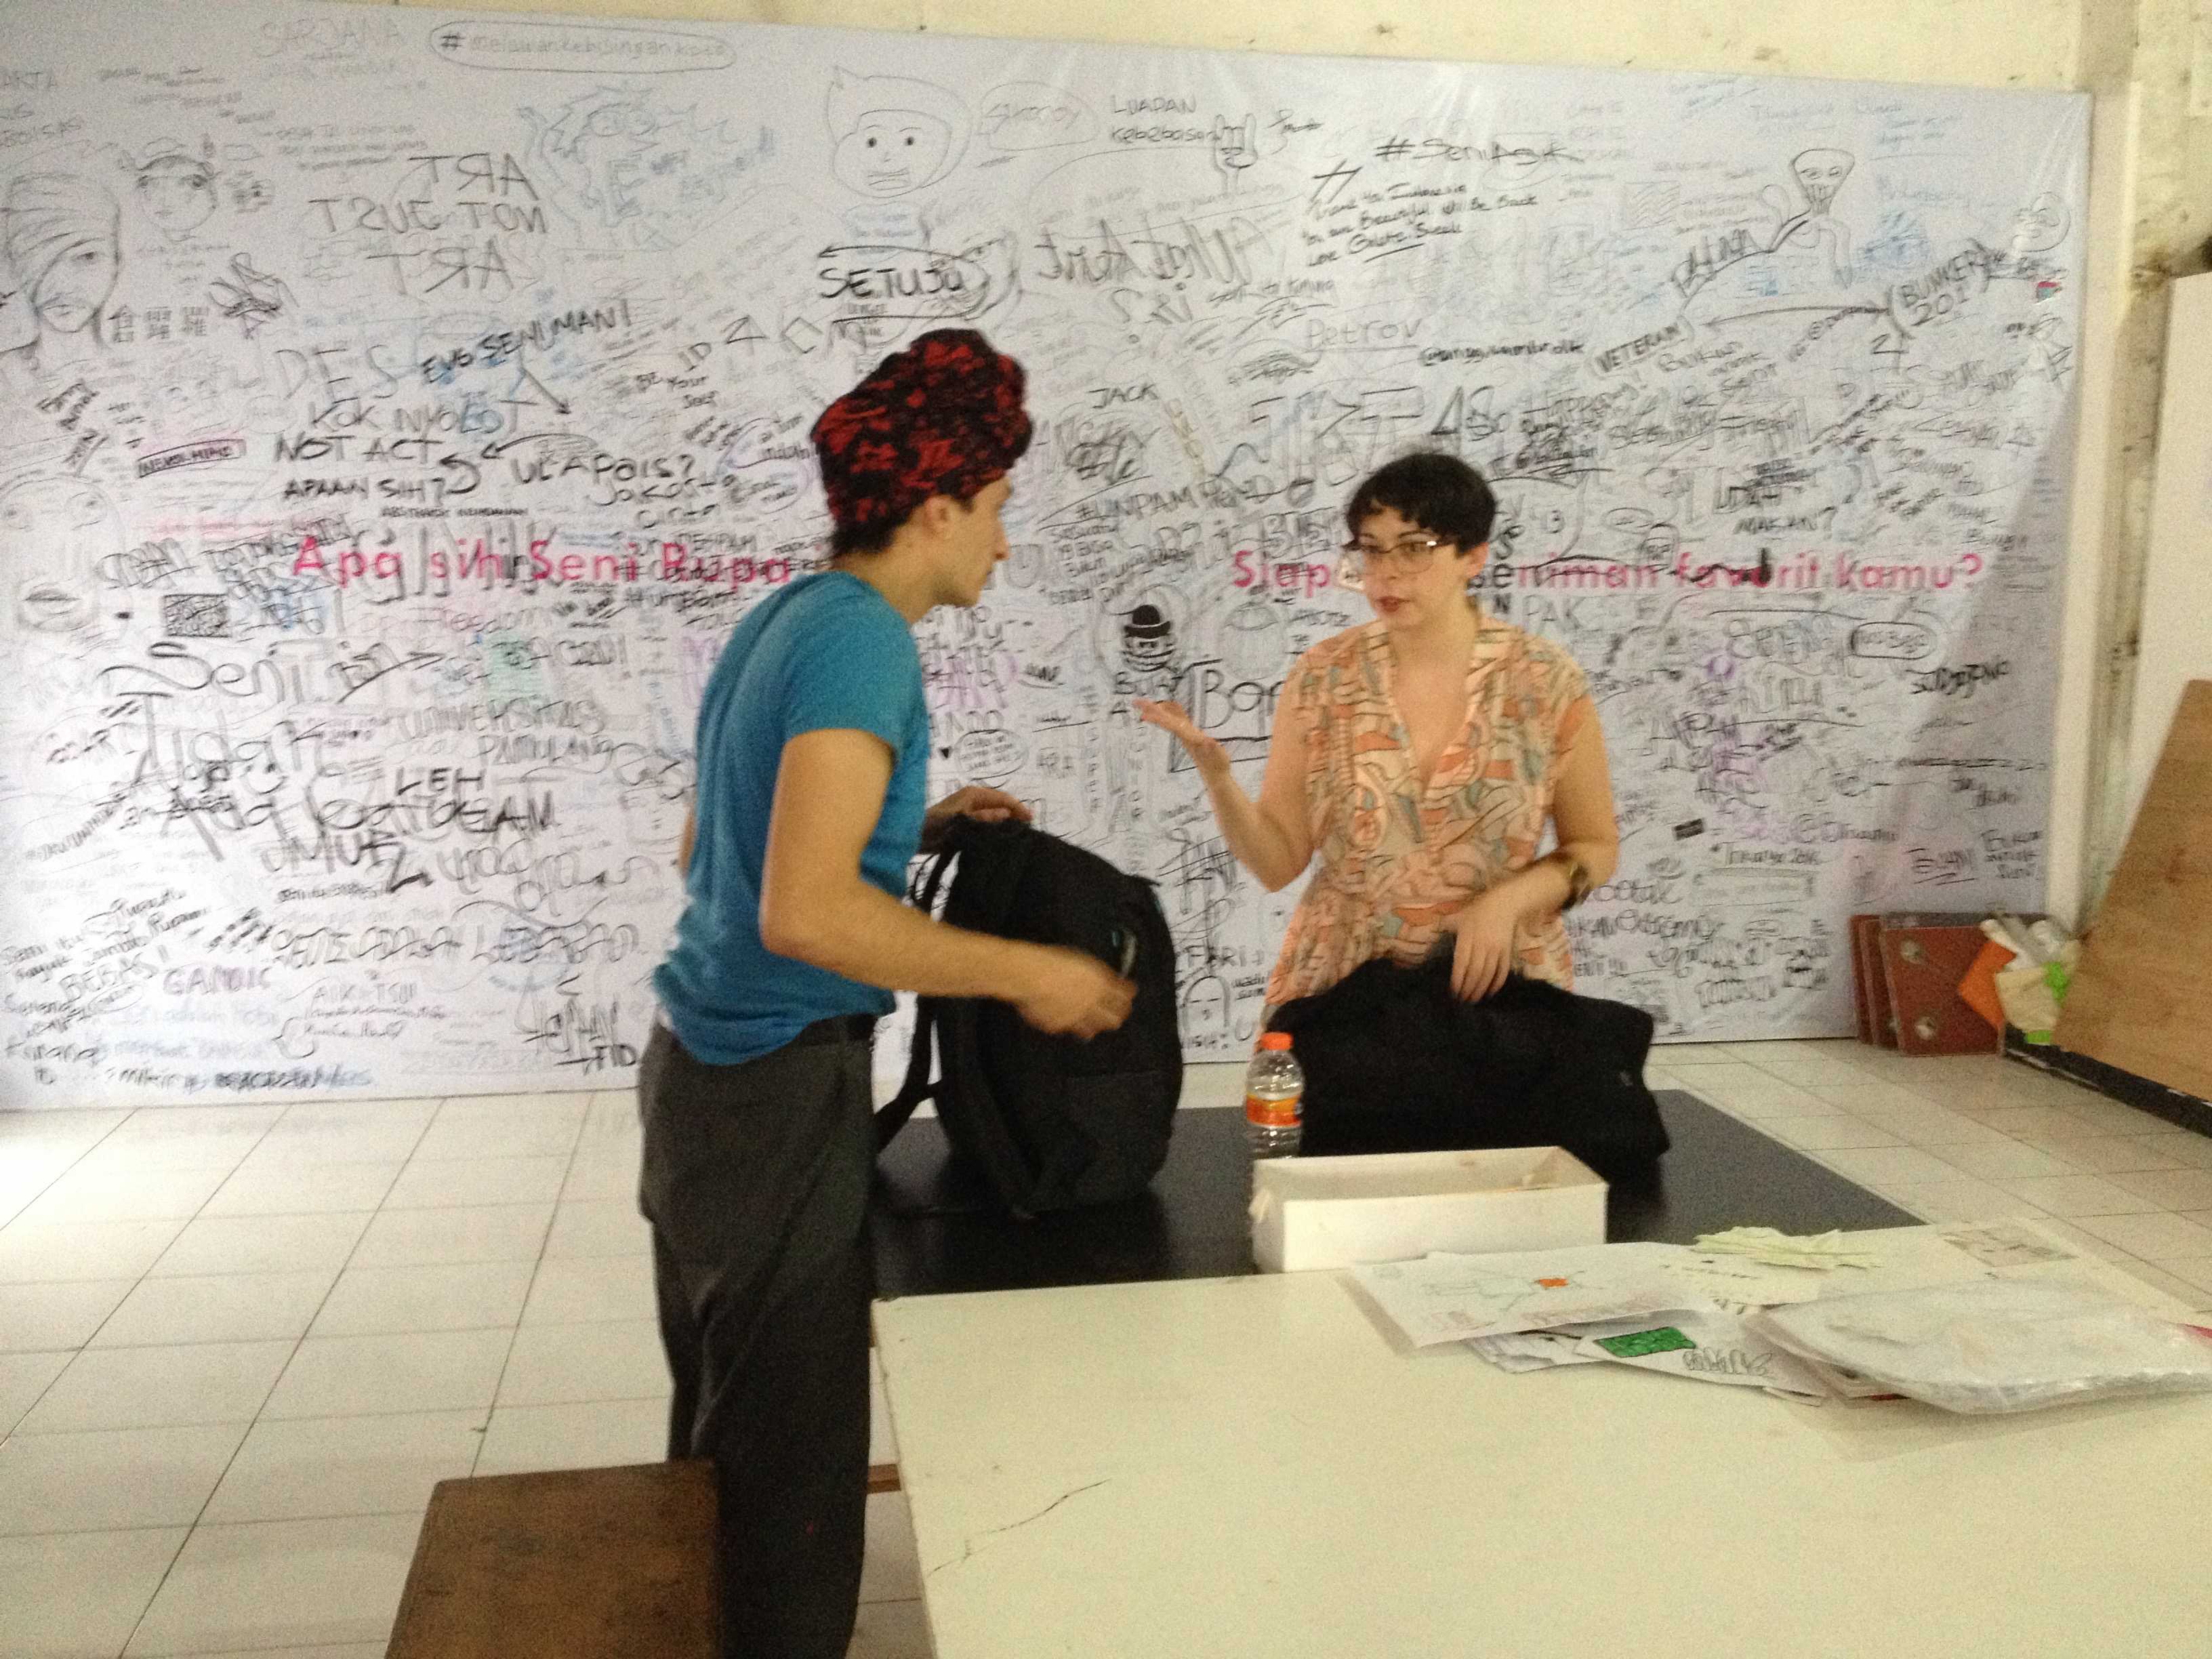 Tutorial Marina Vishmidt with student Panagiotis Panagiotakopoulos. Jakarta, 2015